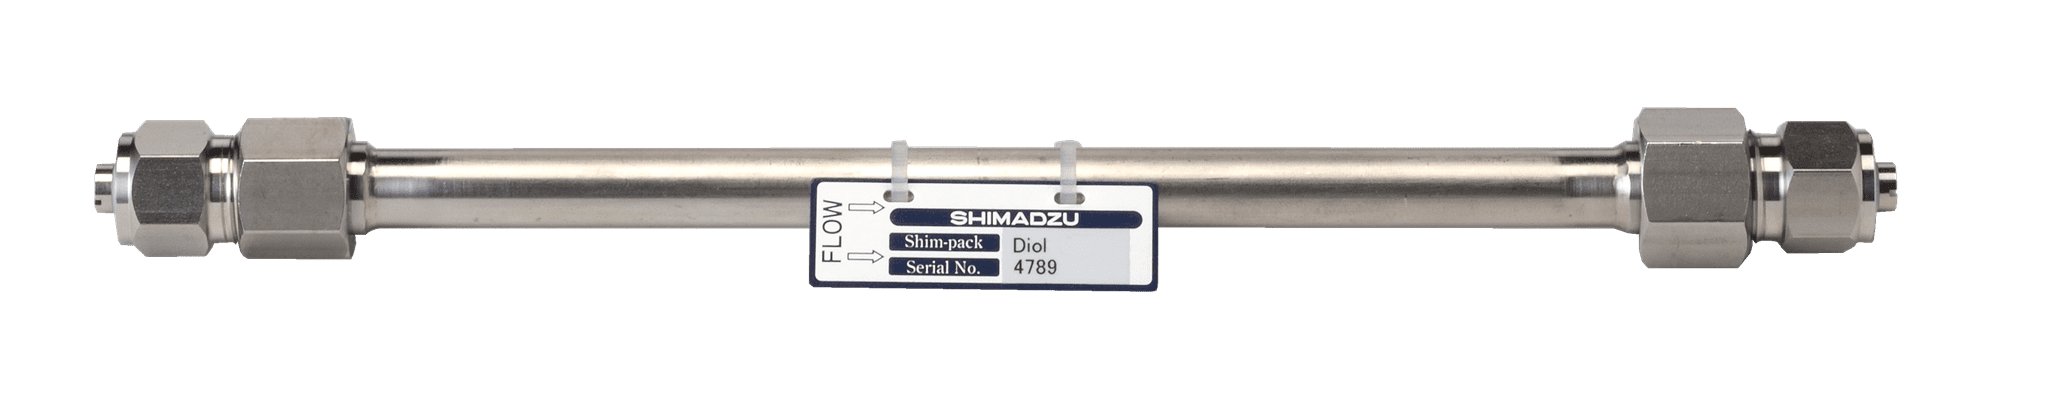 Image de Shim-pack Diol-150; 5 µm; 500 x 7.9